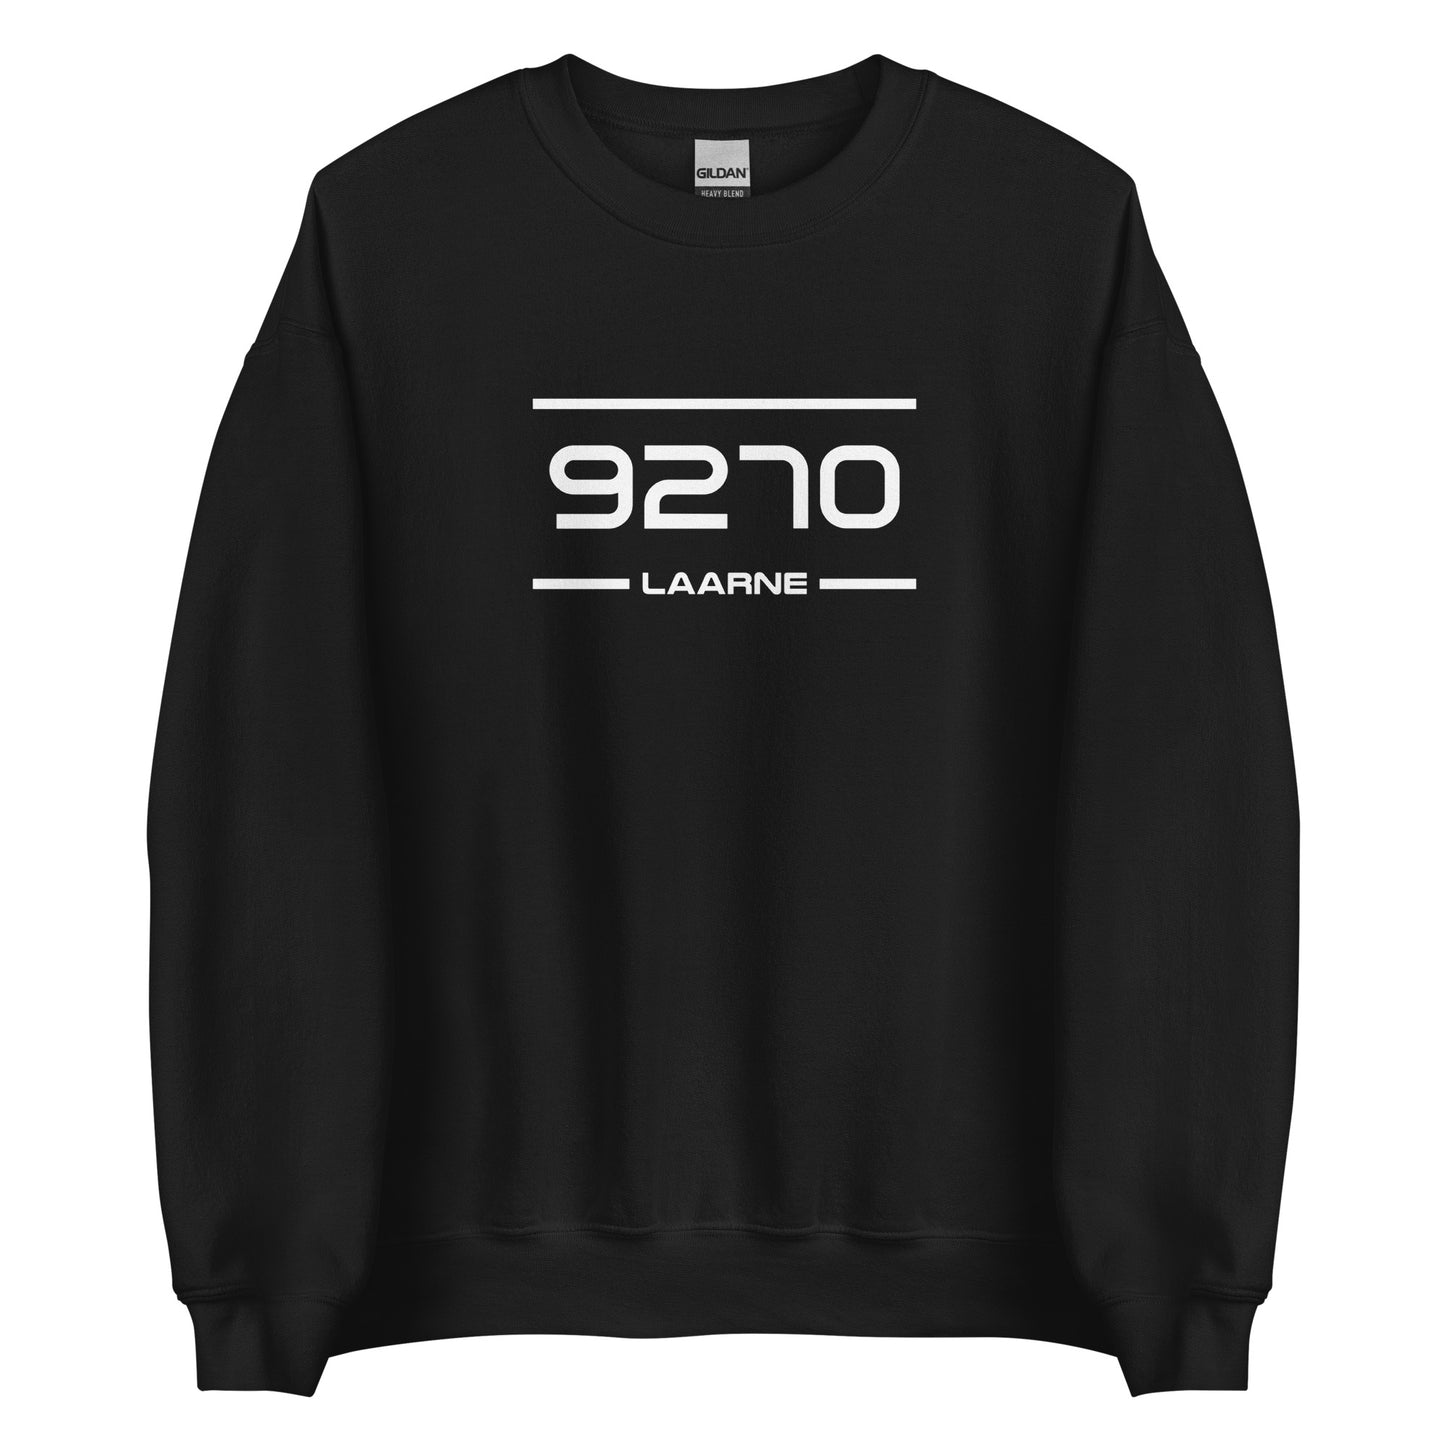 Sweater - 9270 - Laarne (M/V)